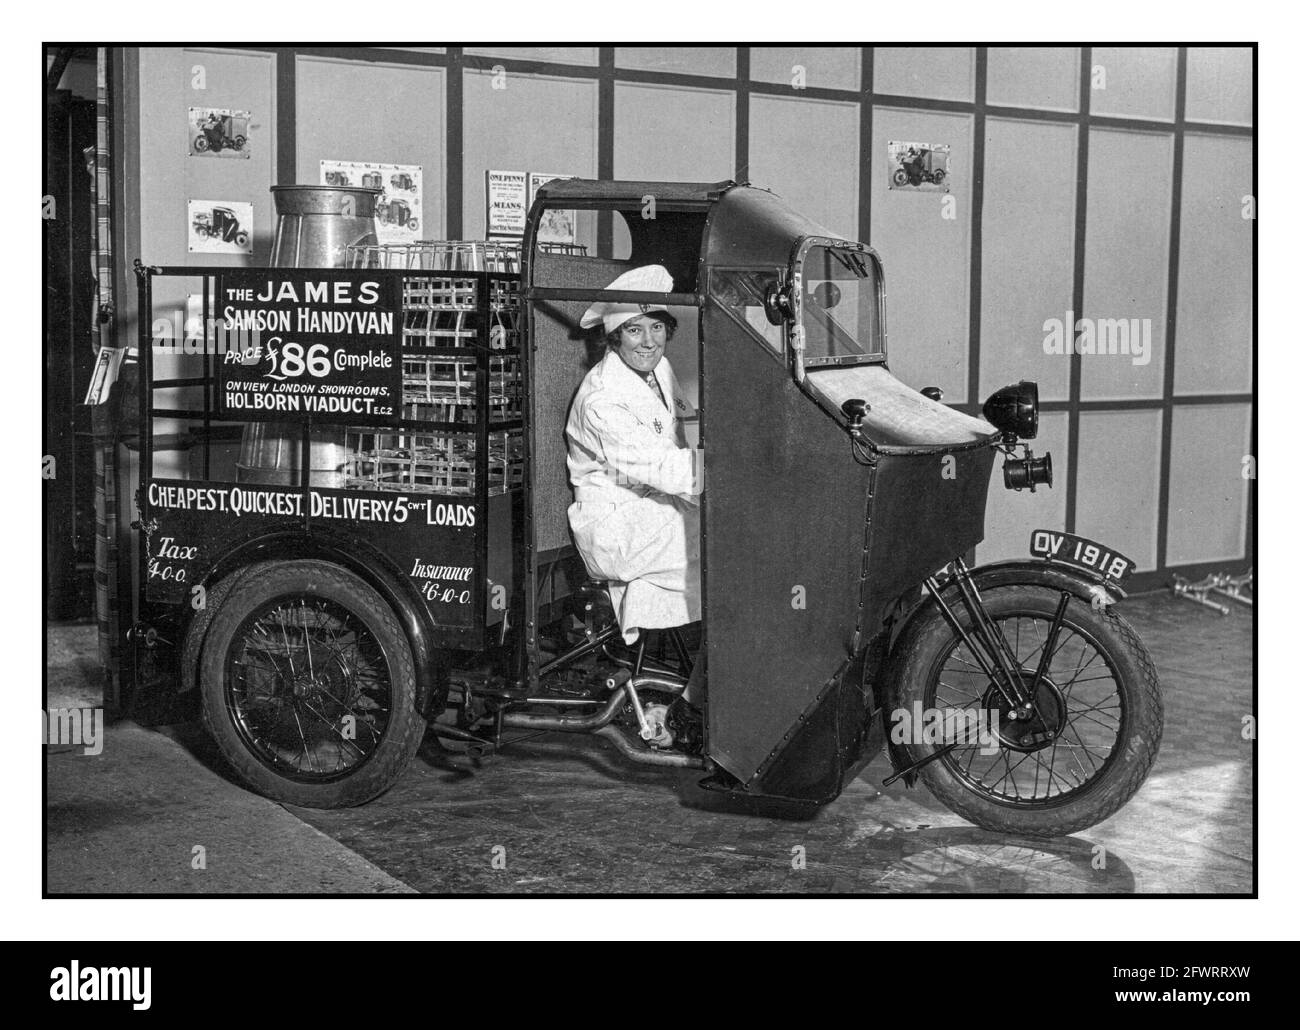 Veicolo ELETTRICO DI CONSEGNA del 1900 James Samson Handyman carrello elettrico di consegna del latte offerto per la vendita a £86.00 completo. Fotografia promozionale in-house con driver femminile UK Foto Stock